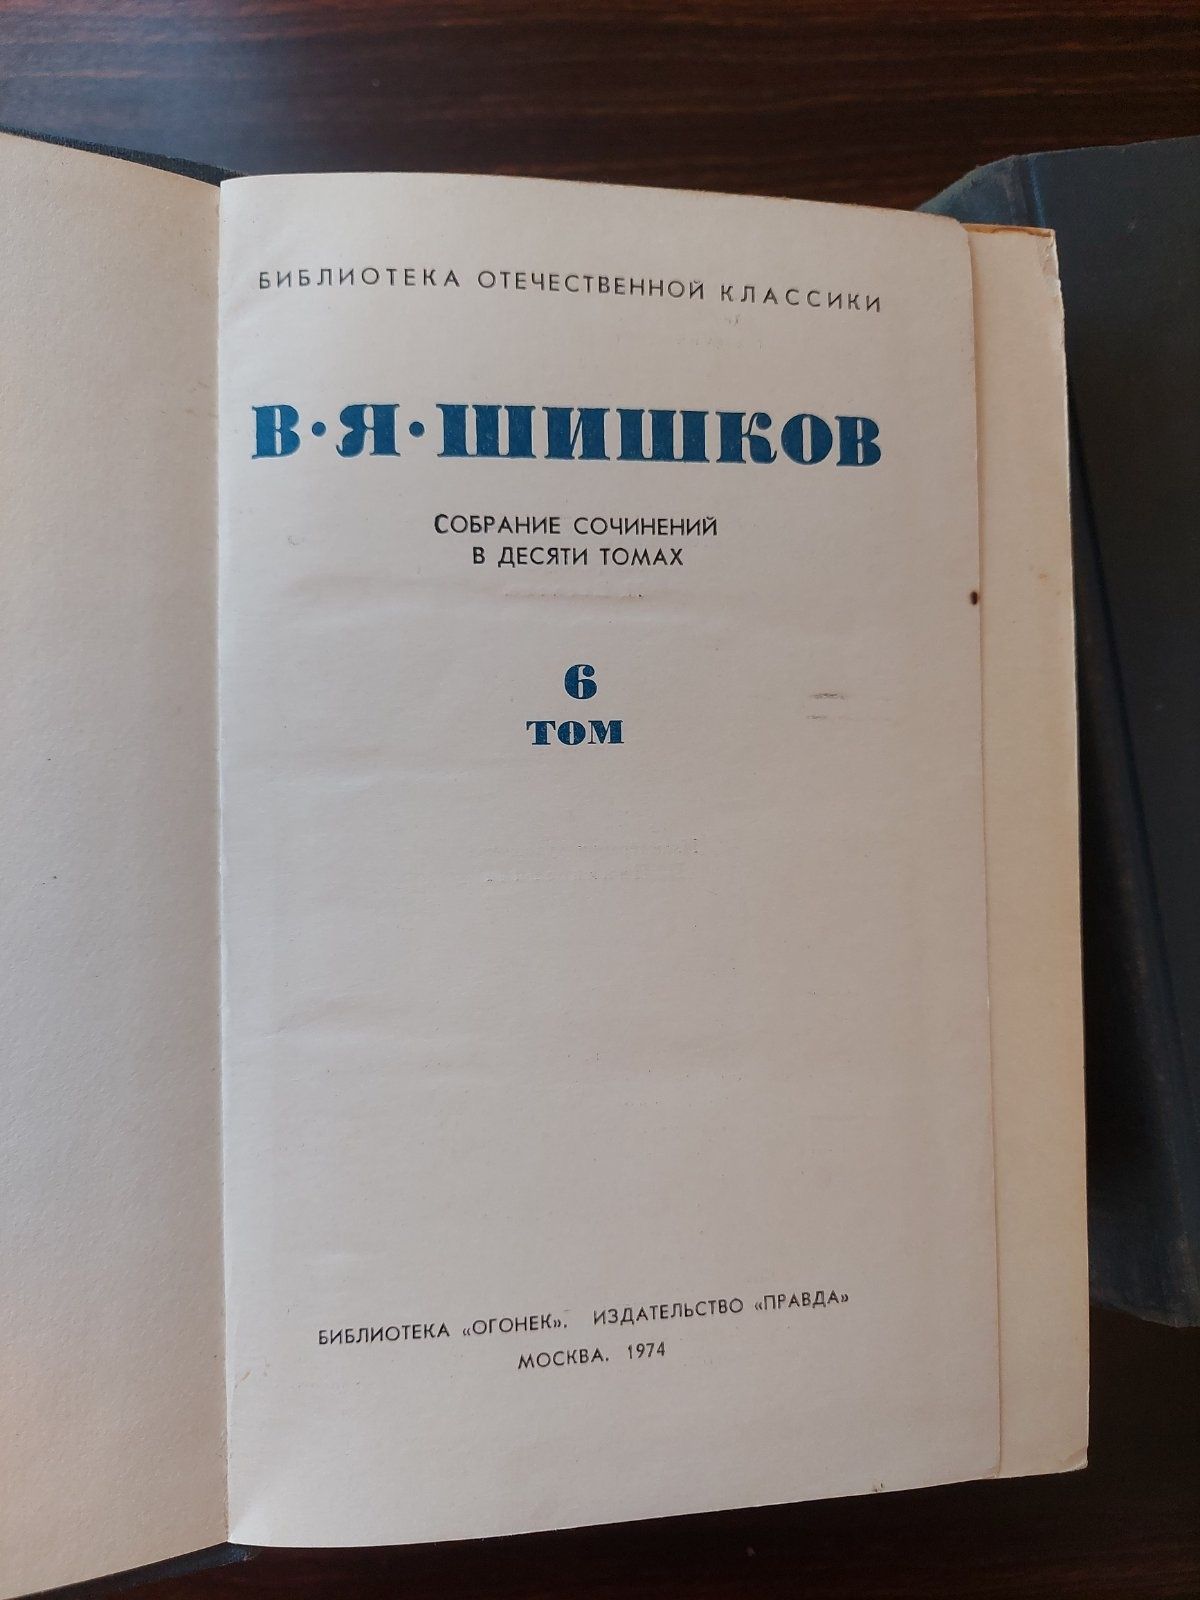 Шишков В. Я. в 10-ти томах